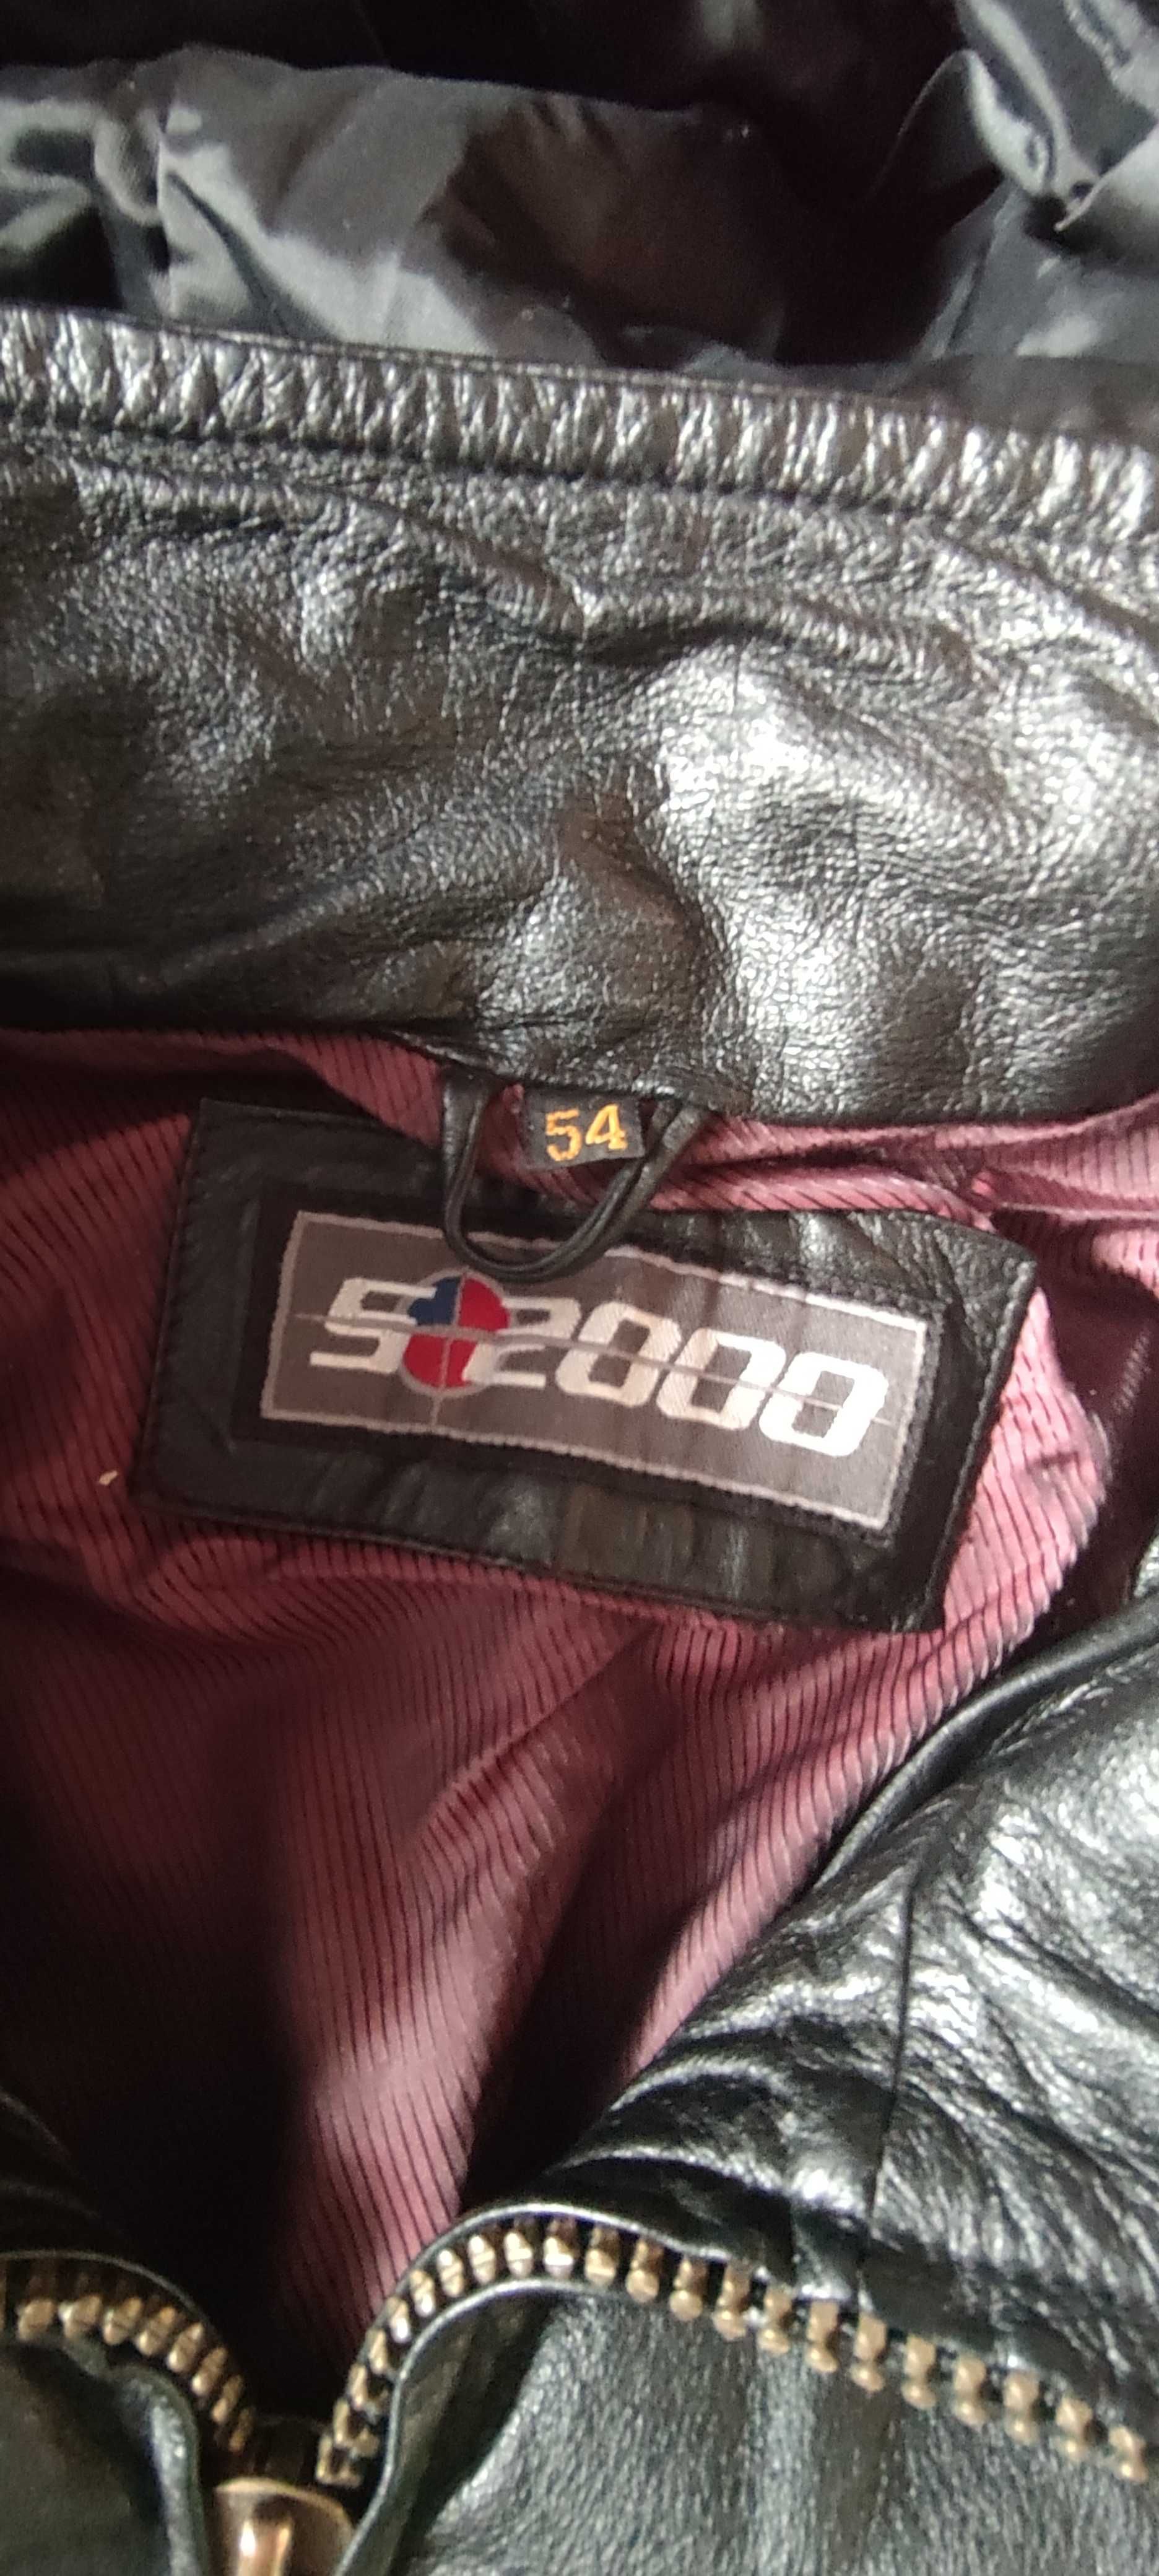 Kurtka skórzana męska marki S2000 rozmiar 54